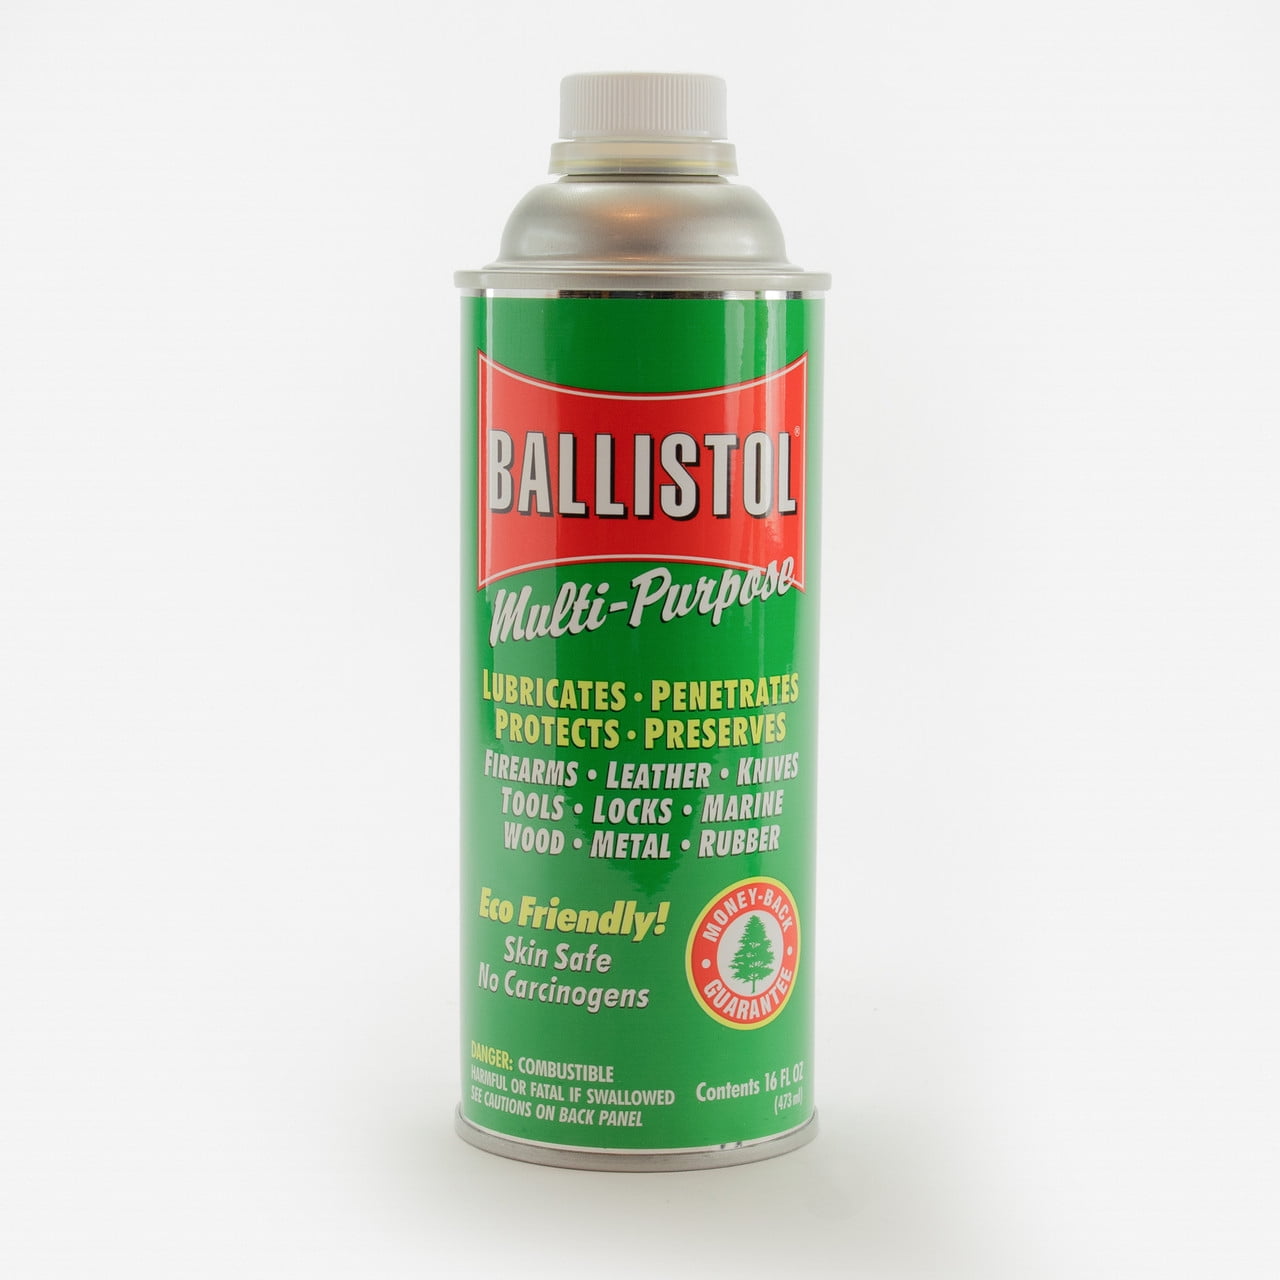 About Ballistol – Ballistol USA